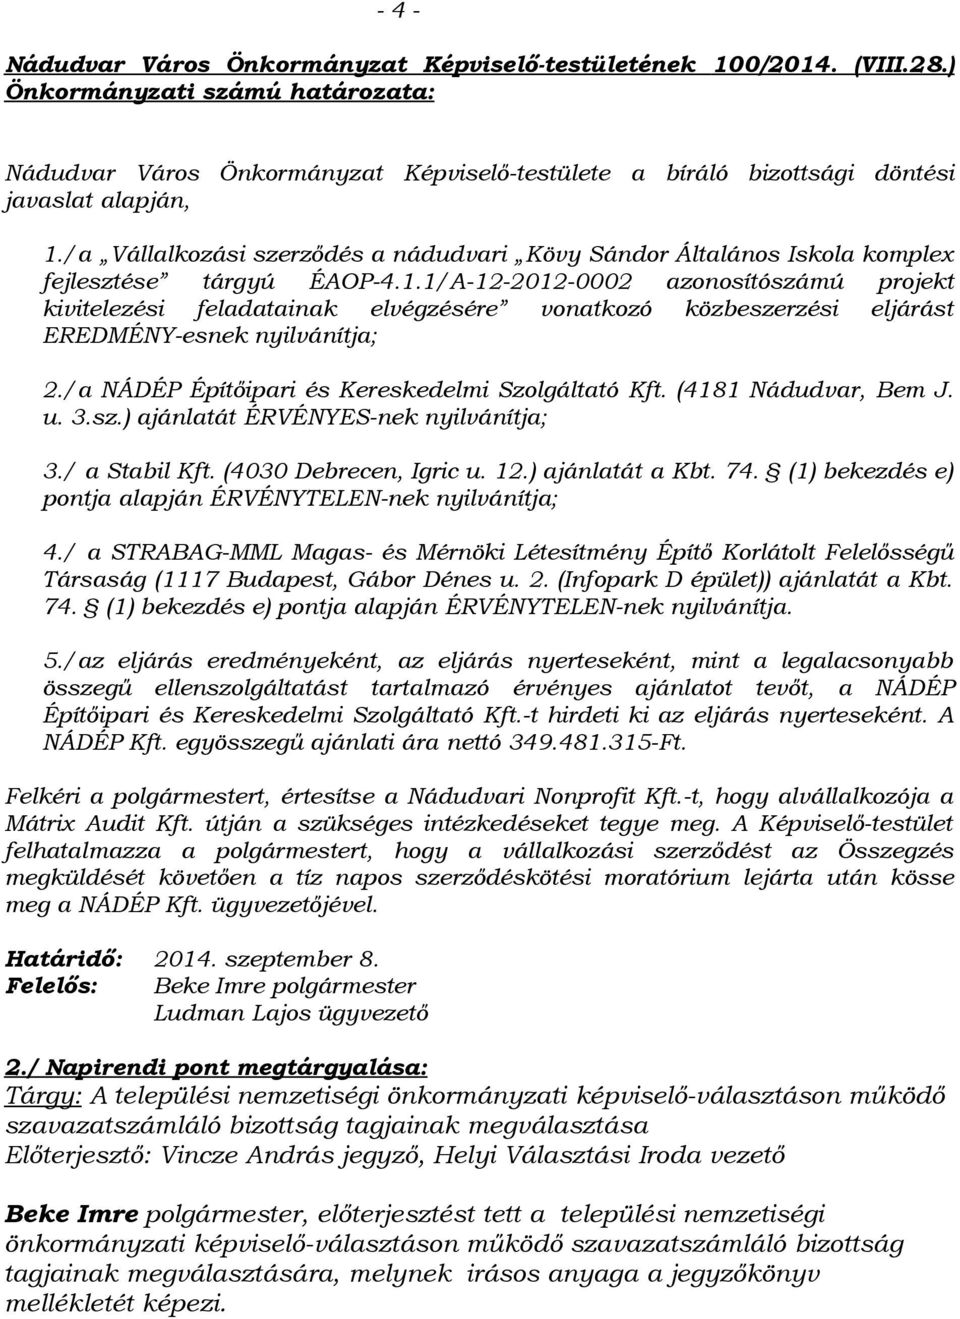 /a Vállalkozási szerződés a nádudvari Kövy Sándor Általános Iskola komplex fejlesztése tárgyú ÉAOP-4.1.